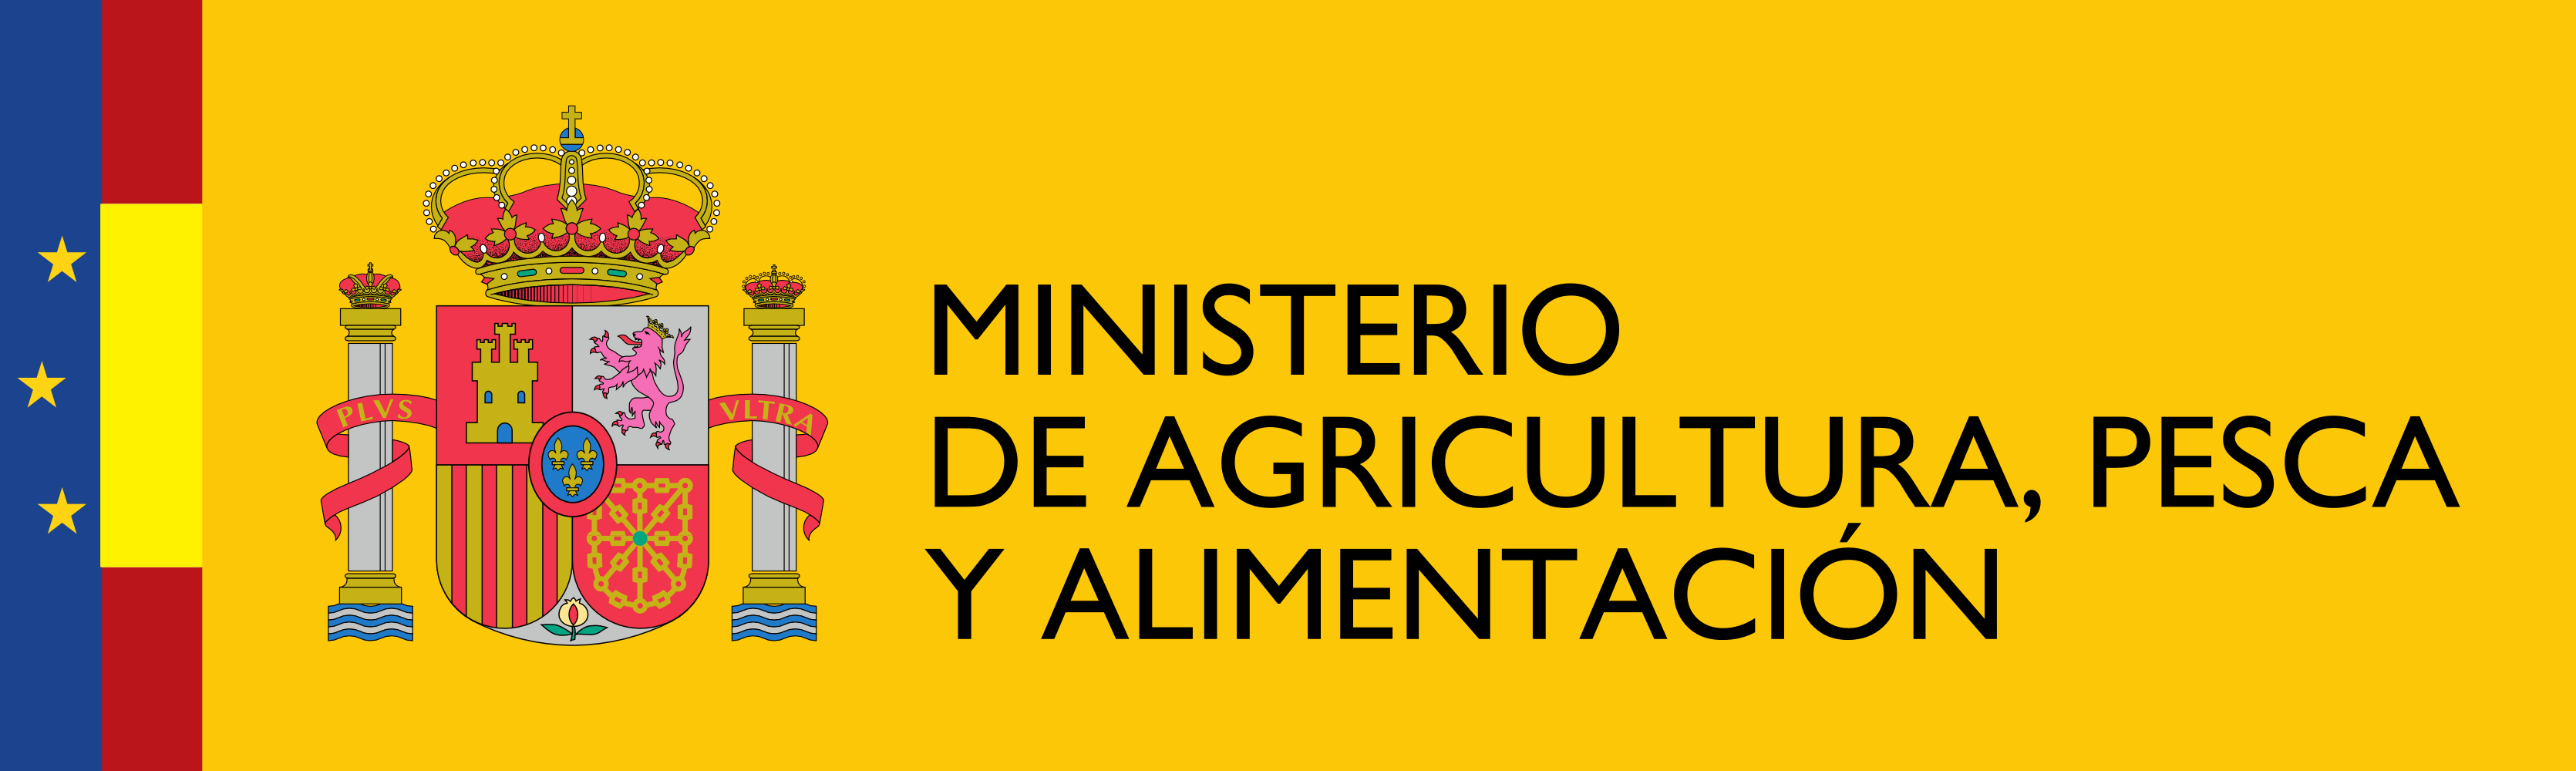 Logotipo_del_Ministerio_de_Agricultura_Pesca_y_Alimentación.png